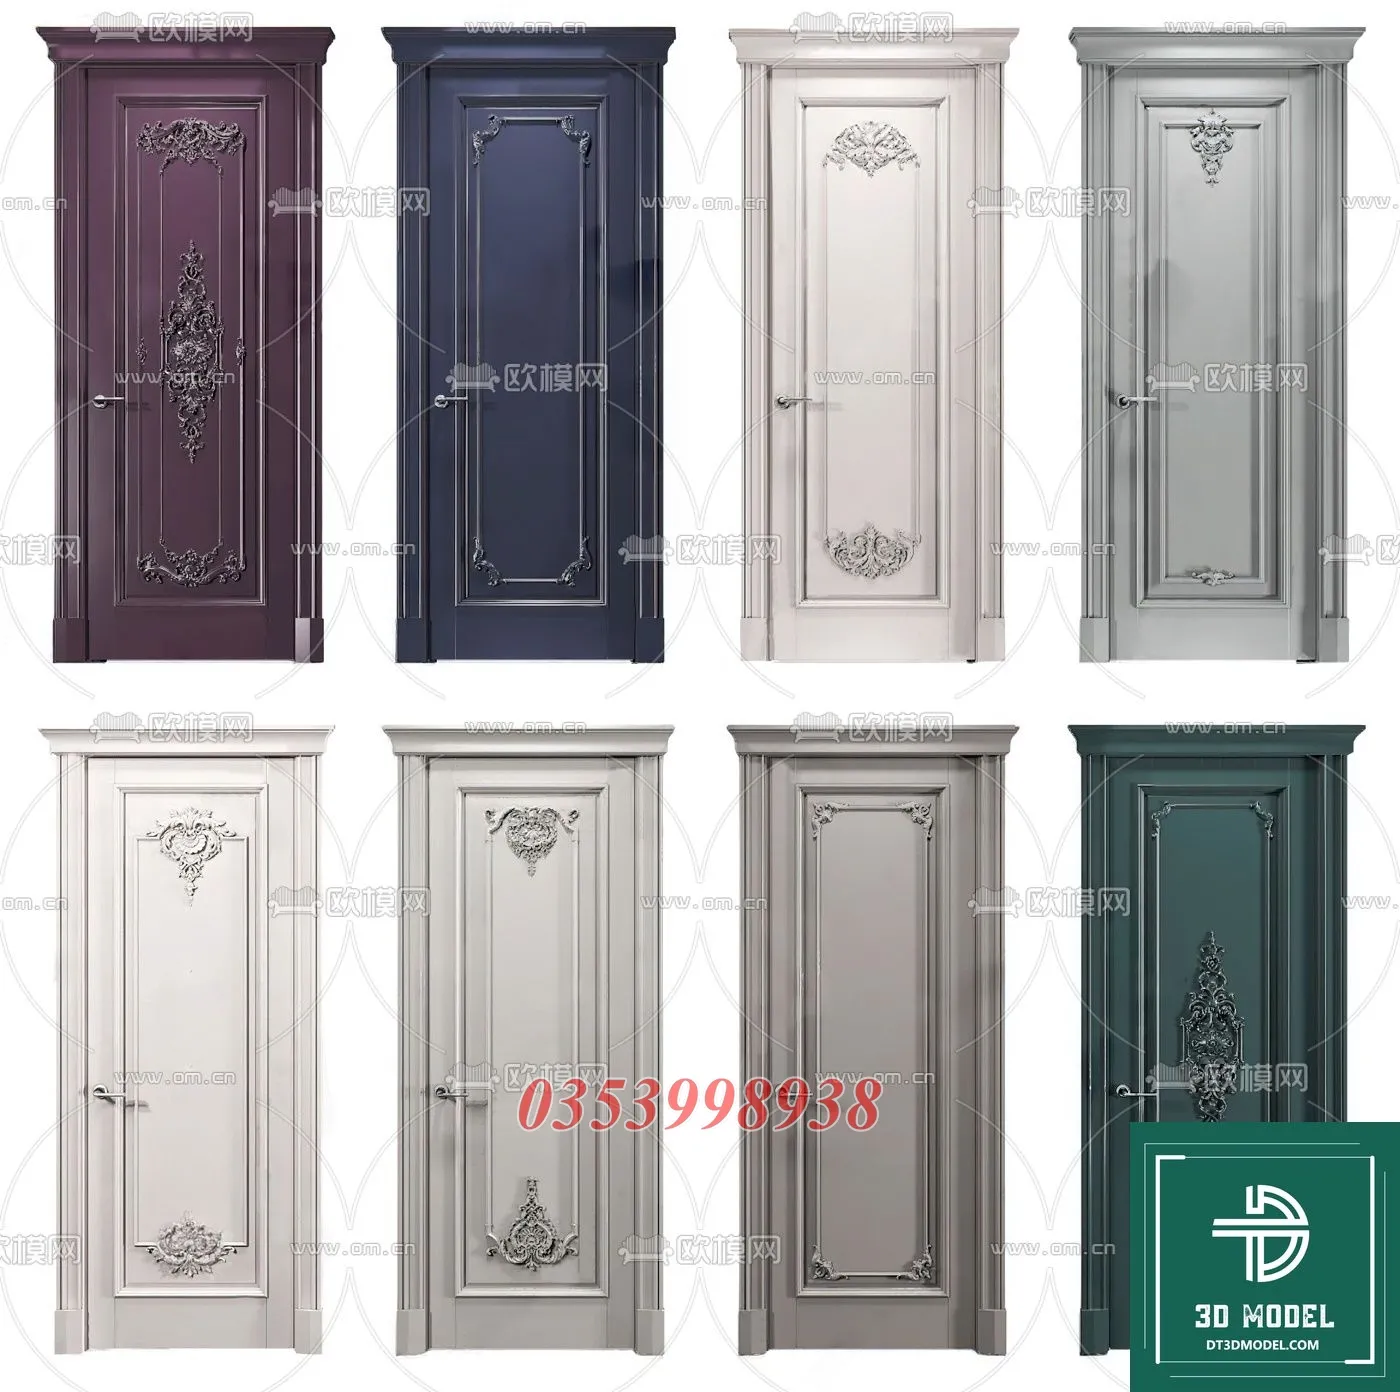 CLASSIC DOOR – 3dsmax MODELS – 008